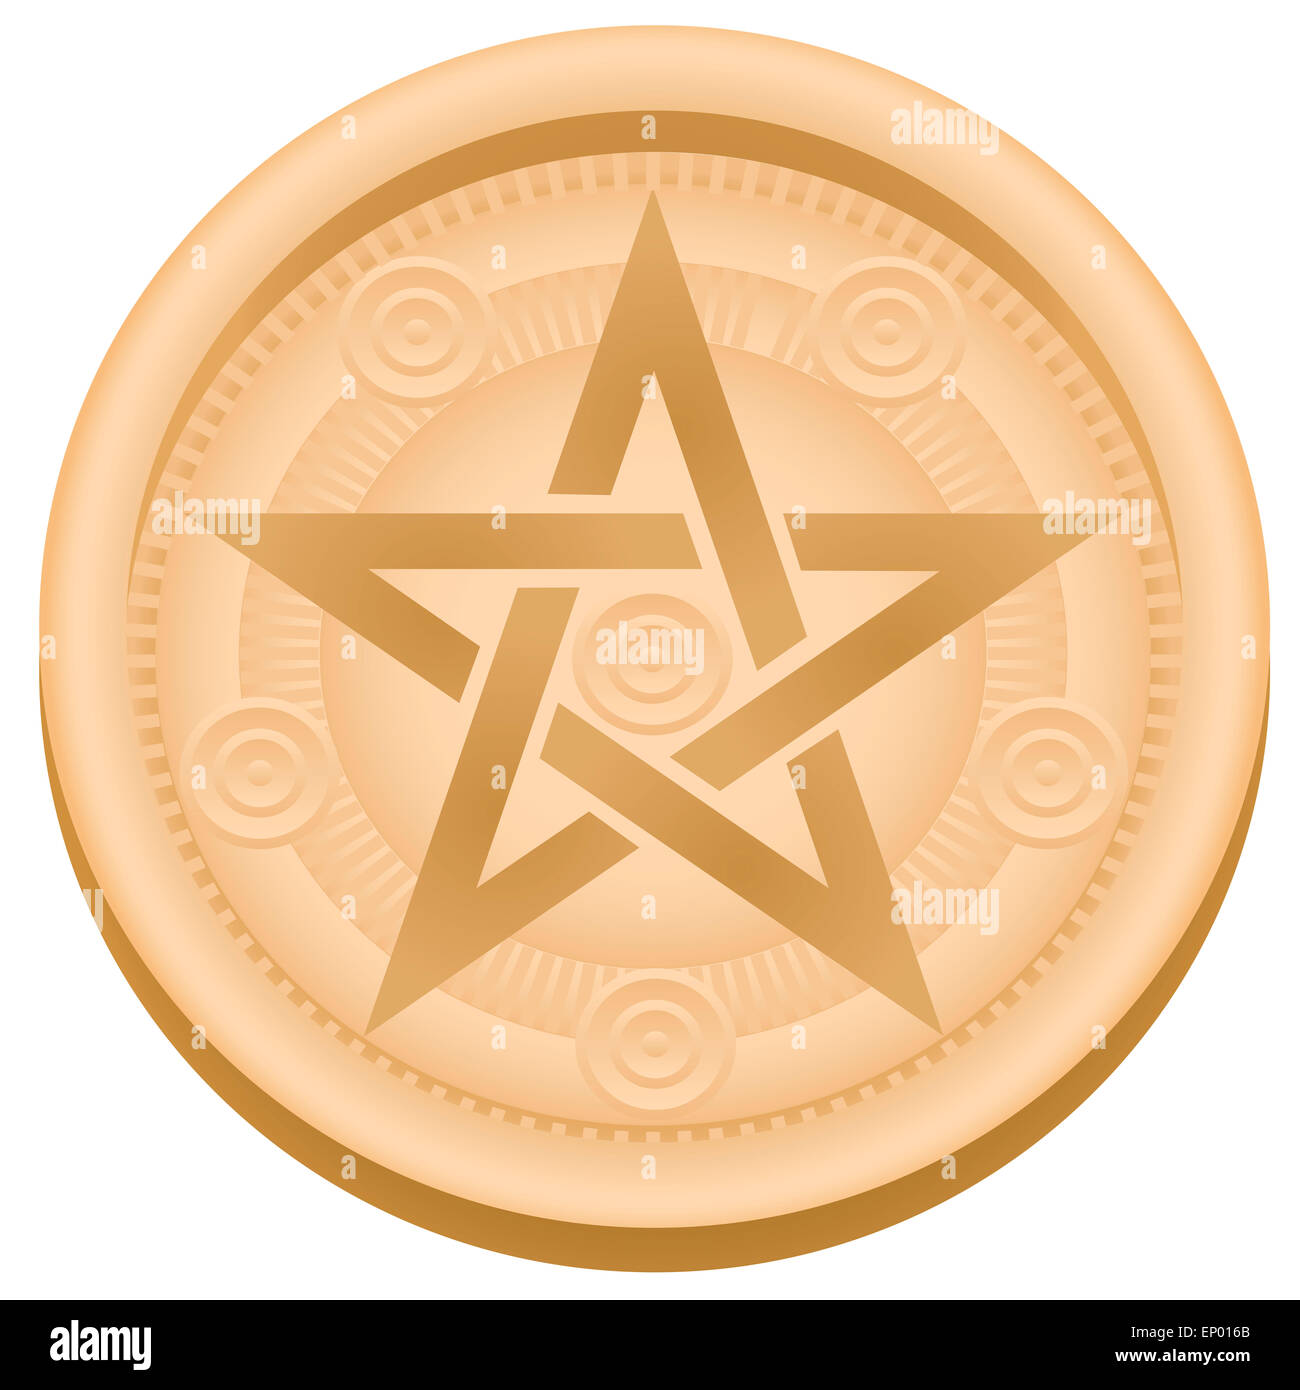 Pentagramm - eine esoterische Pentagramm-Symbol. Abbildung auf weißem Hintergrund. Stockfoto